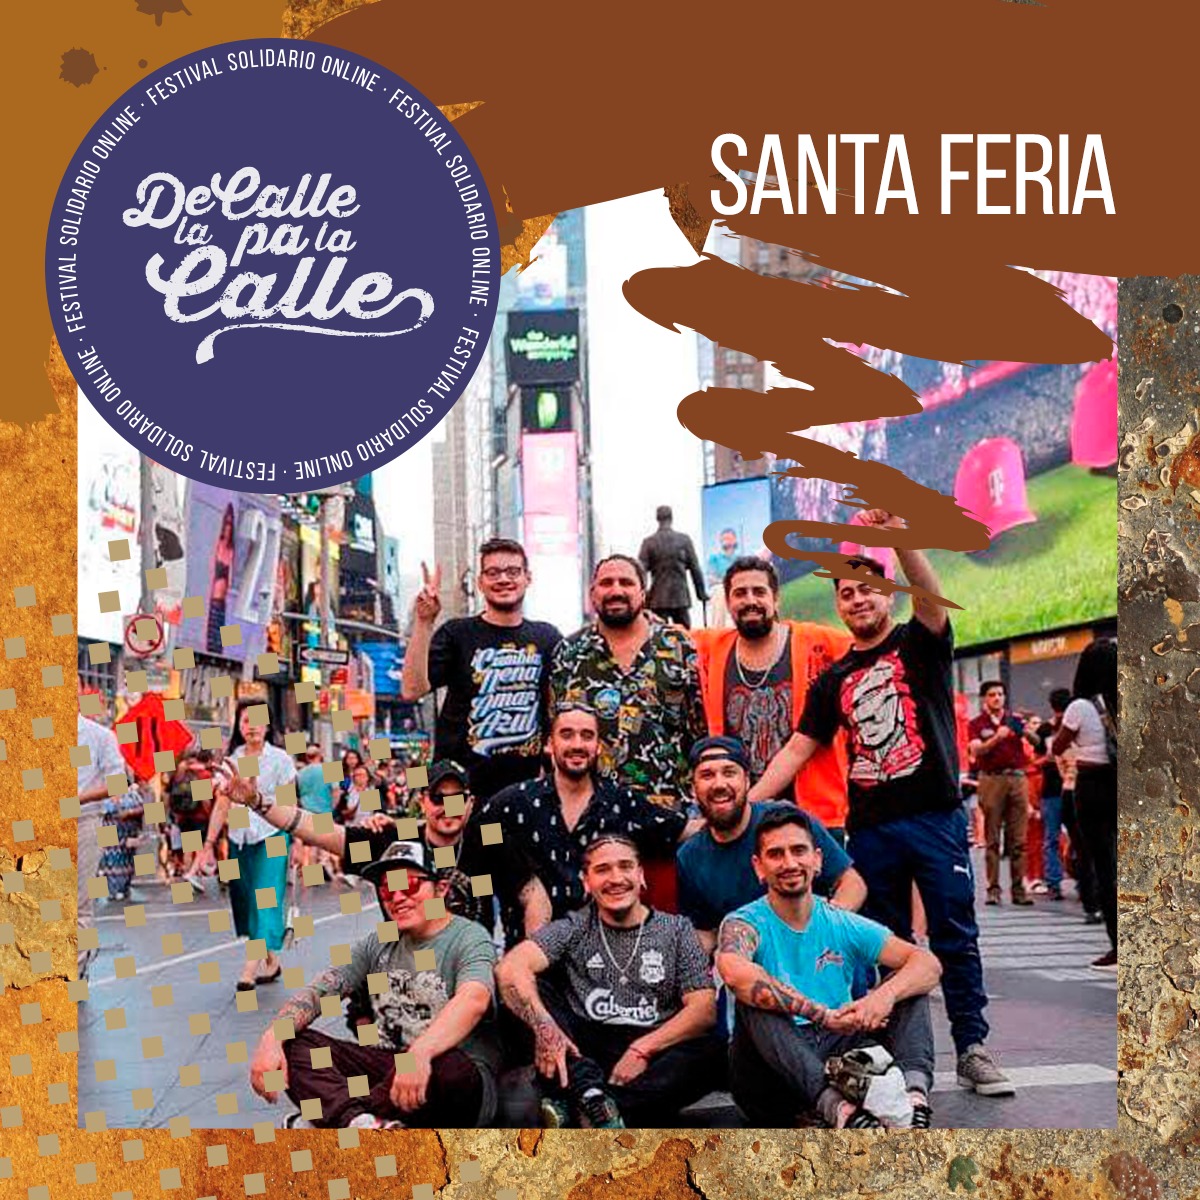 Colectivo independiente ‘De la Calle Pa la Calle’ organiza evento solidario online en apoyo de Ollas Comunes de Santiago